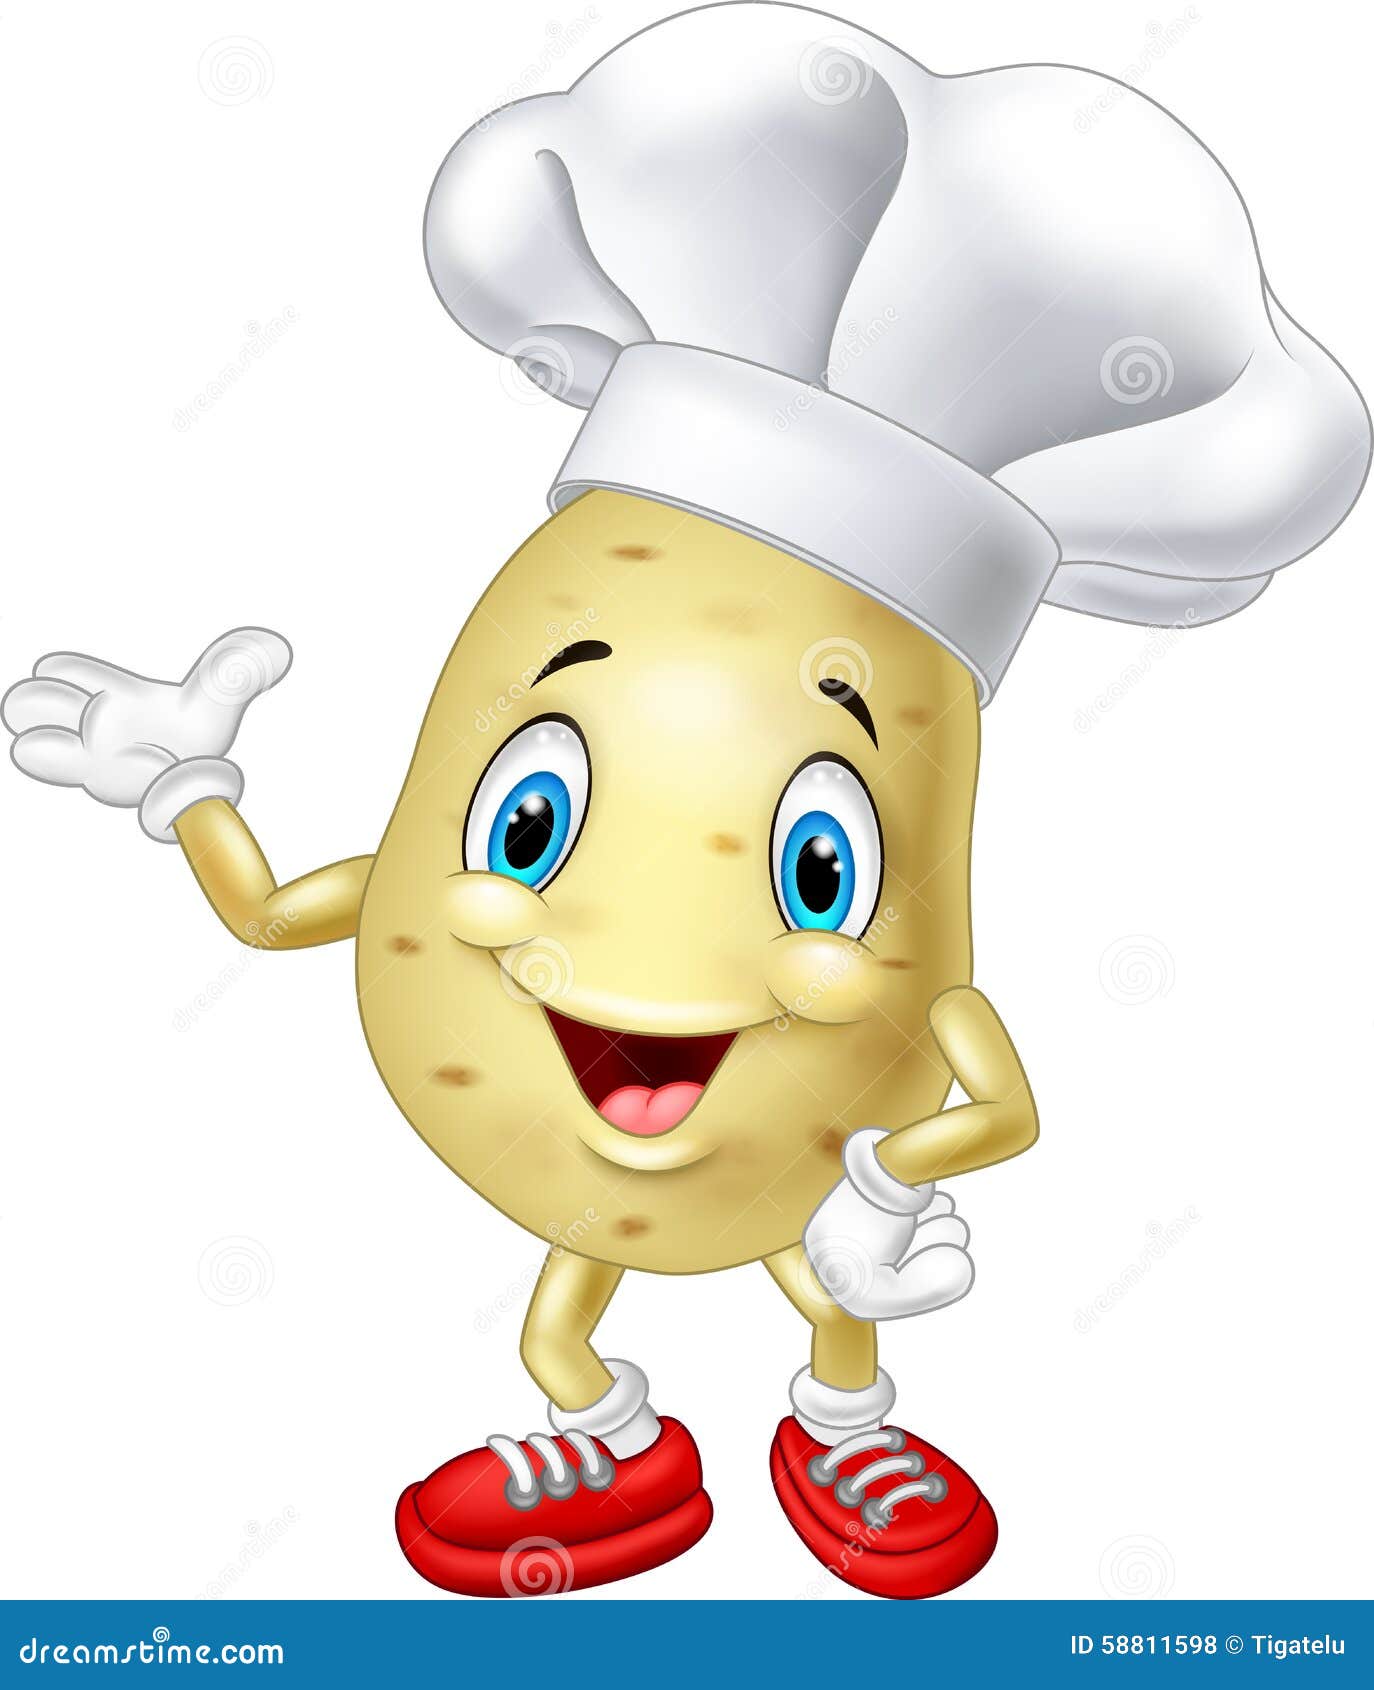 干锅土豆片正宗做法，步骤配方全都告诉你，学会你也是大厨！